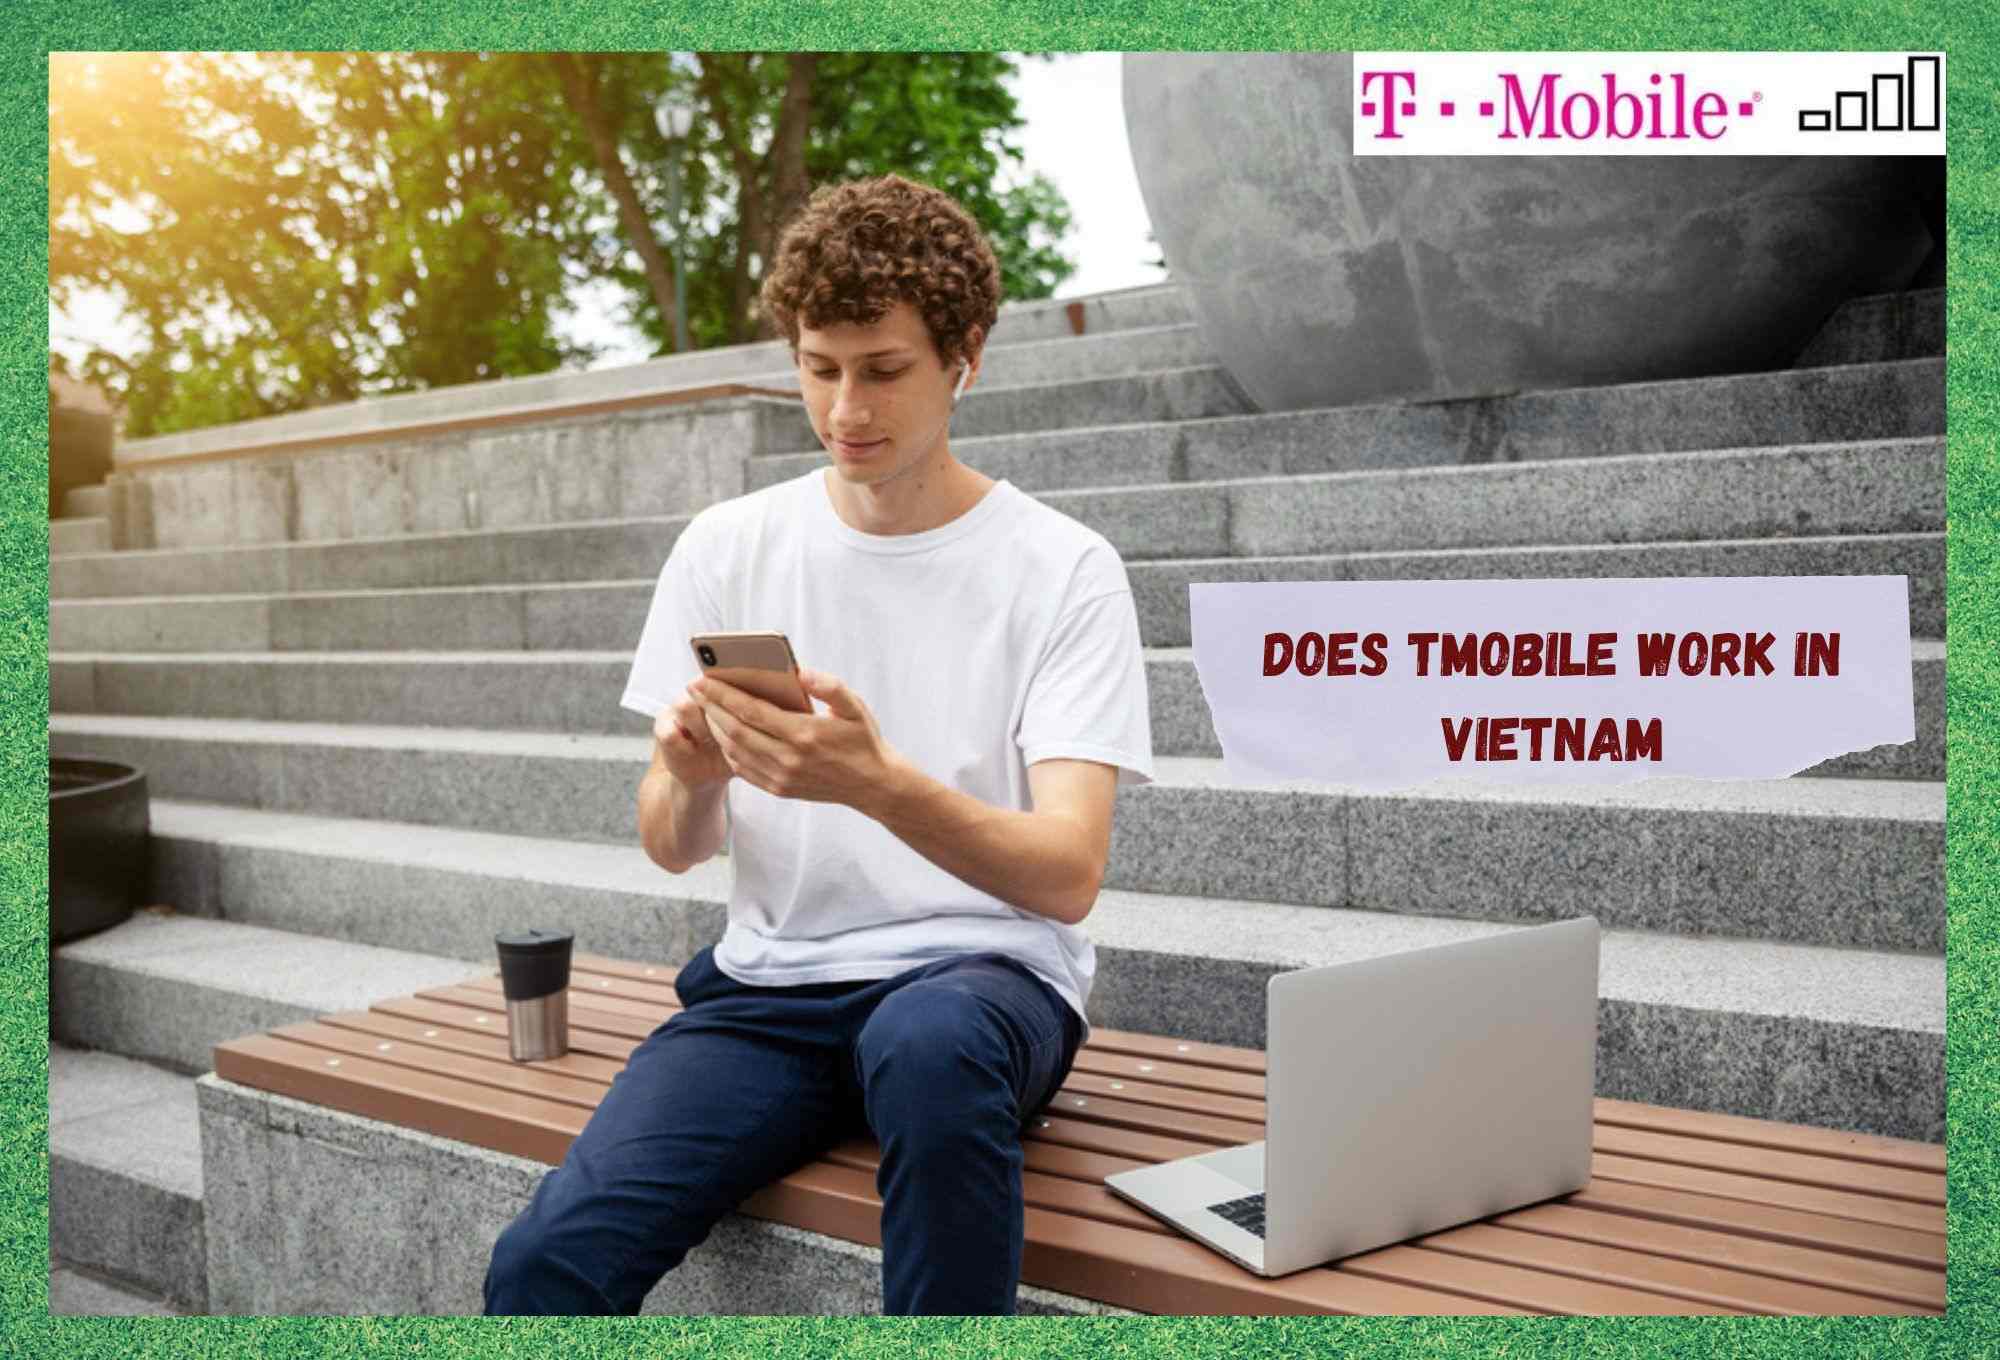 Werkt T-Mobile in Vietnam? (Beantwoord)